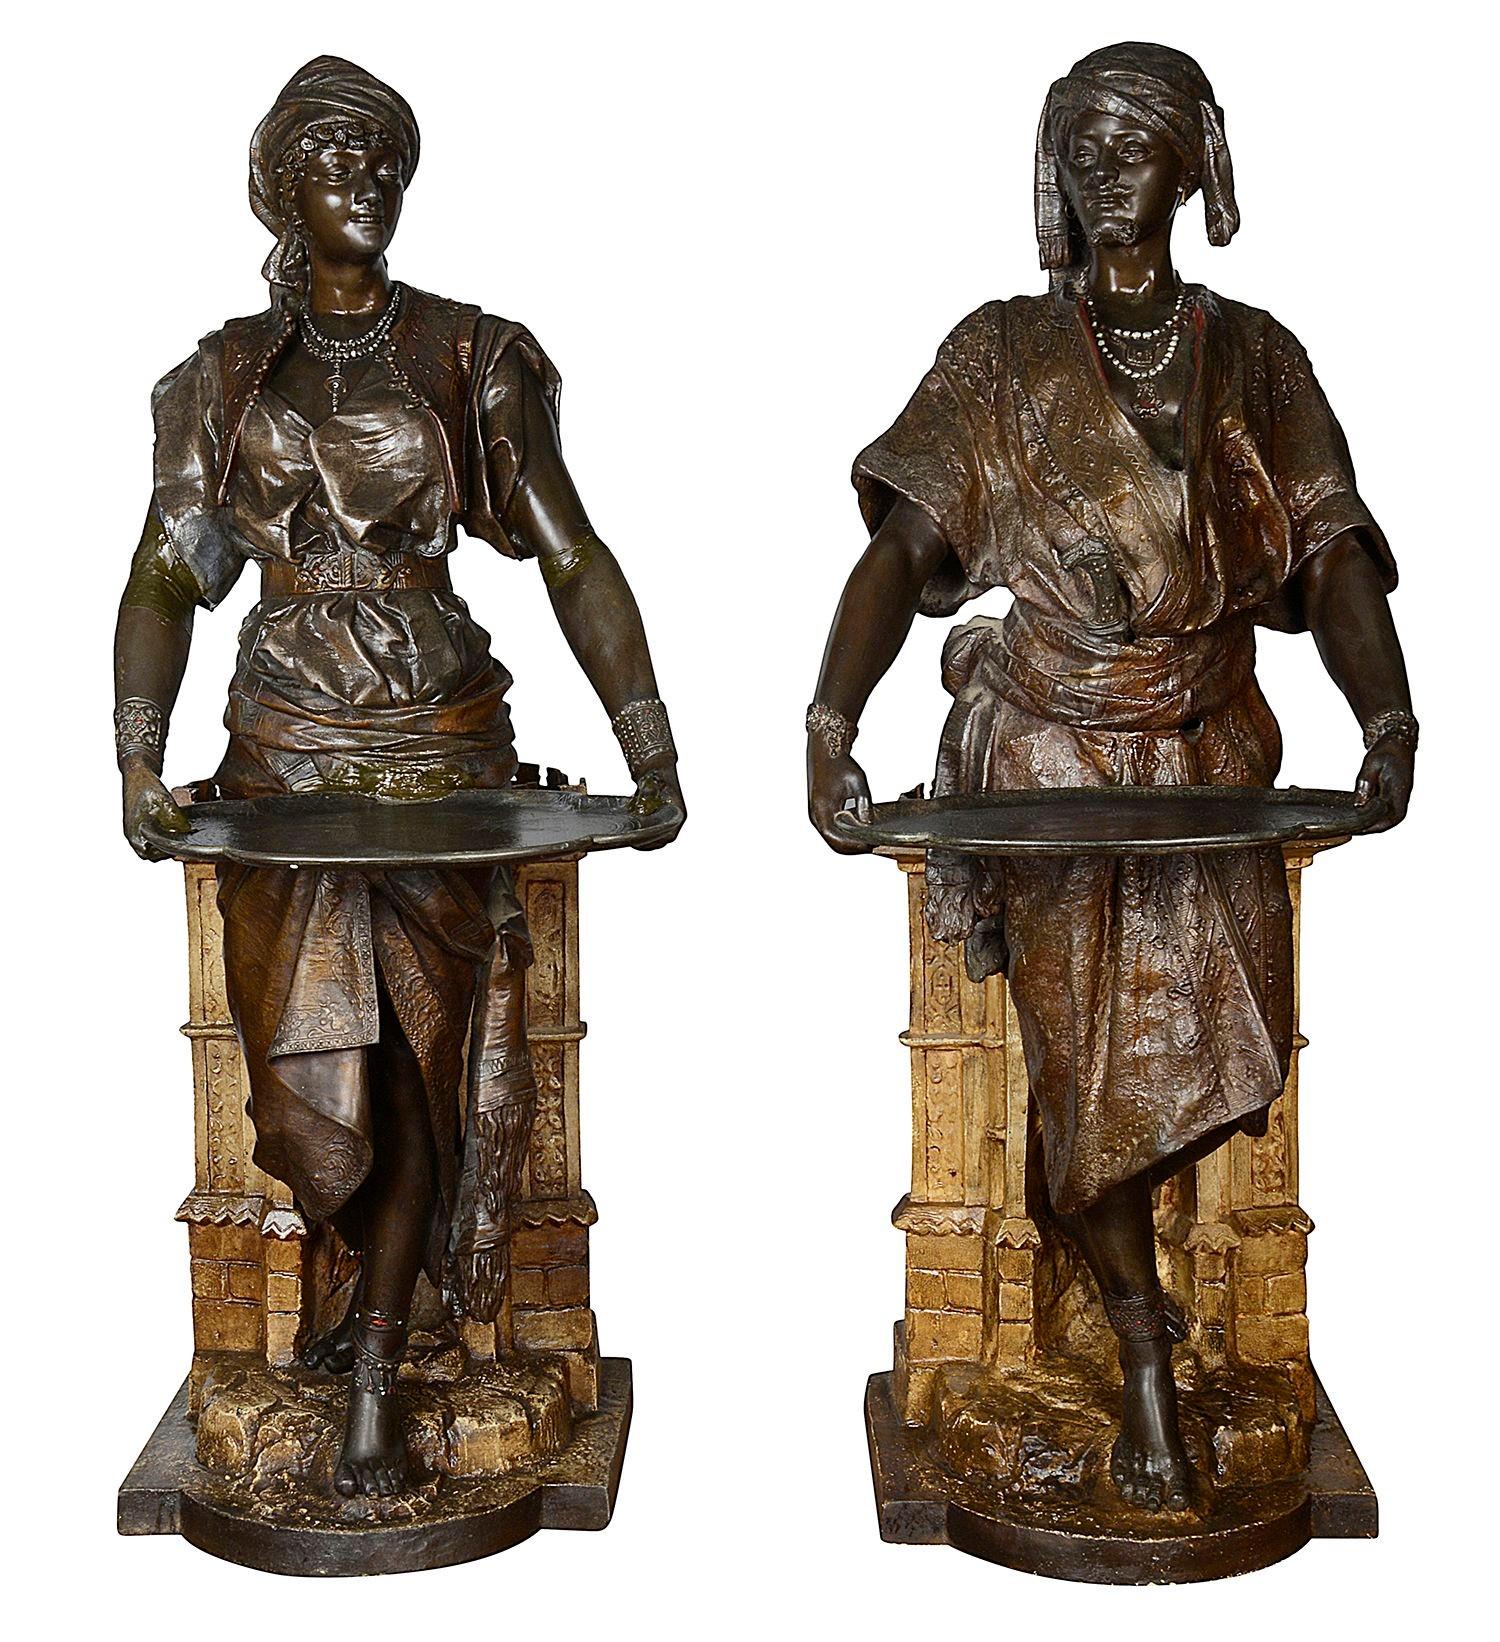 Ein beeindruckendes Paar französischer, kalt bemalter, bronzierter arabischer Zinnfiguren aus dem 19. Jahrhundert, die jeweils ein Tablett halten und sich auf schlossähnliche Sockel stützen.
Signiert an der Basis

Charge 75